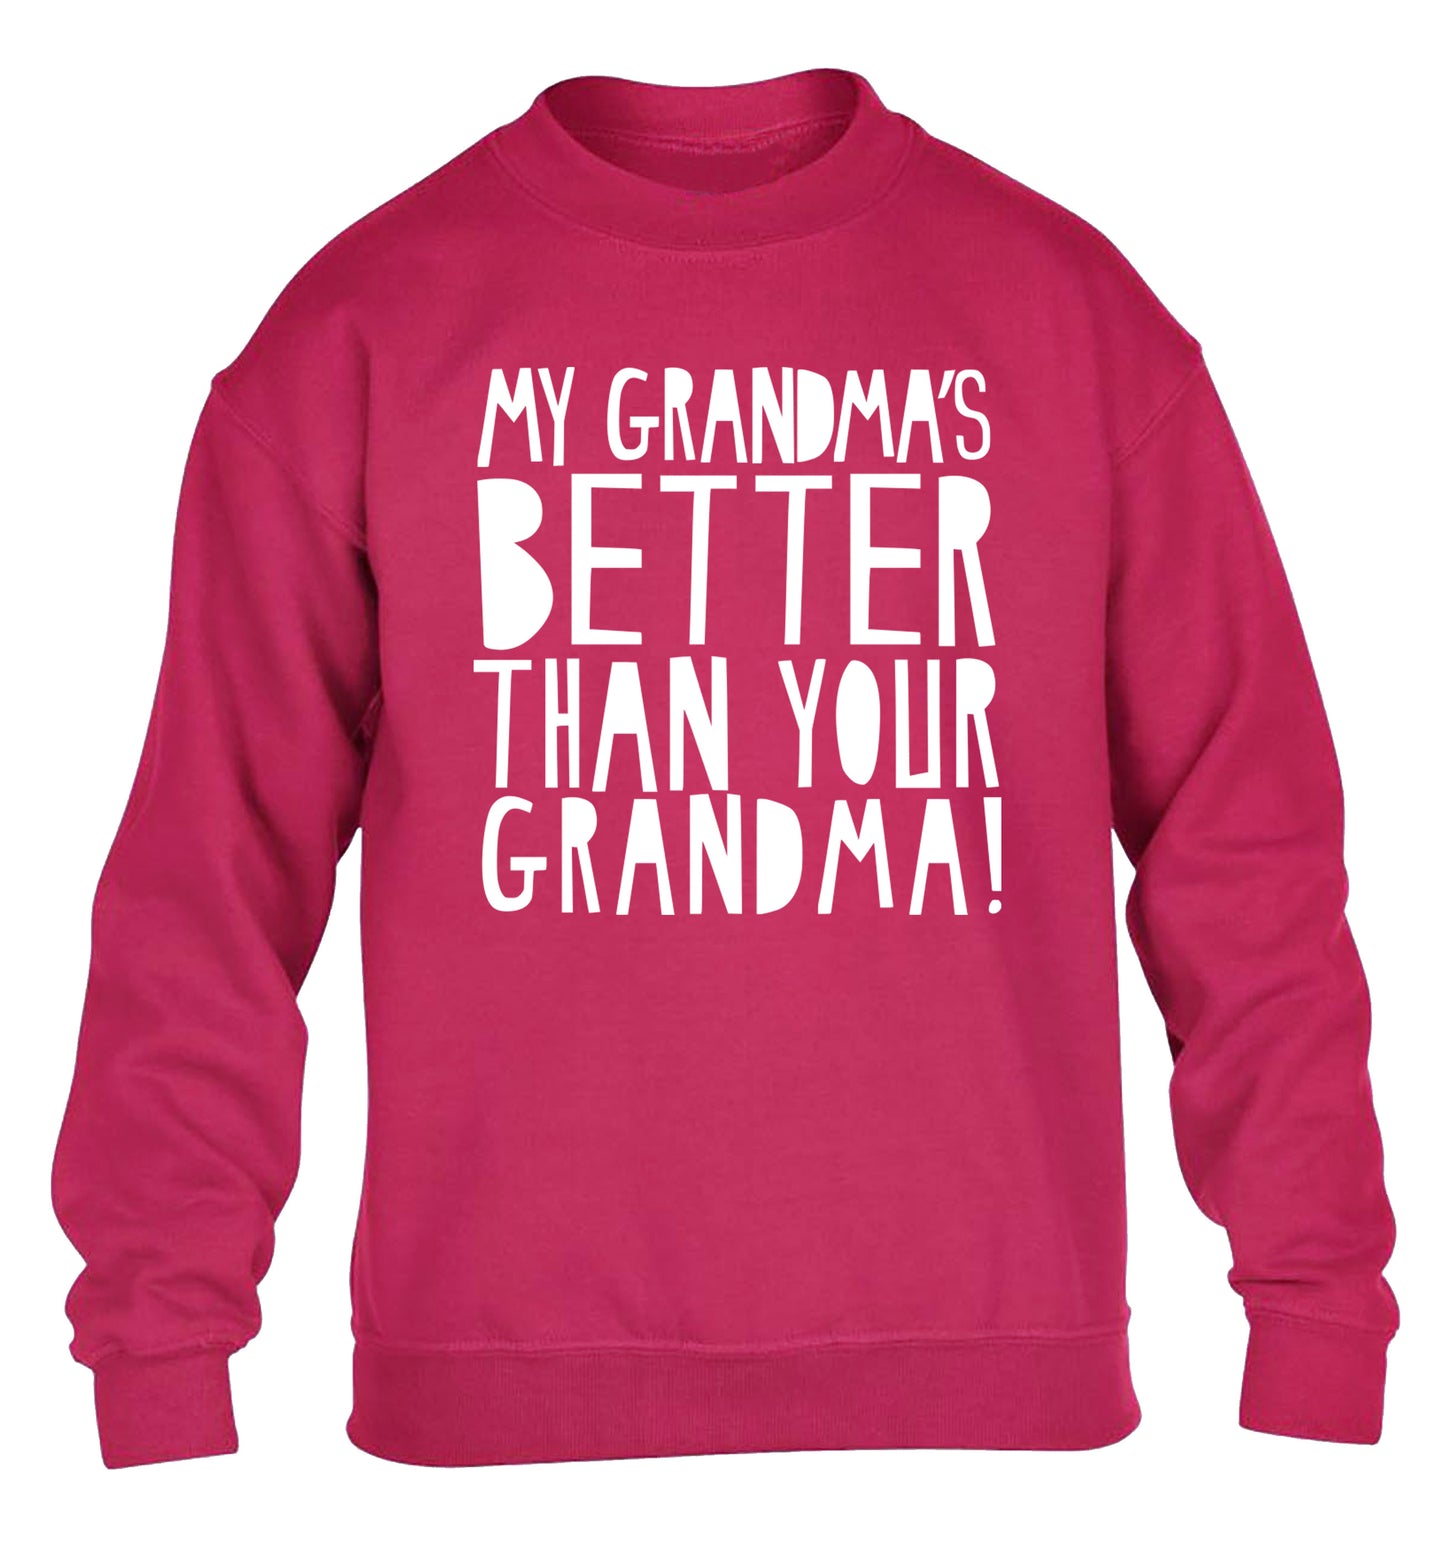 My grandma's better than your grandma children's pink sweater 12-13 Years